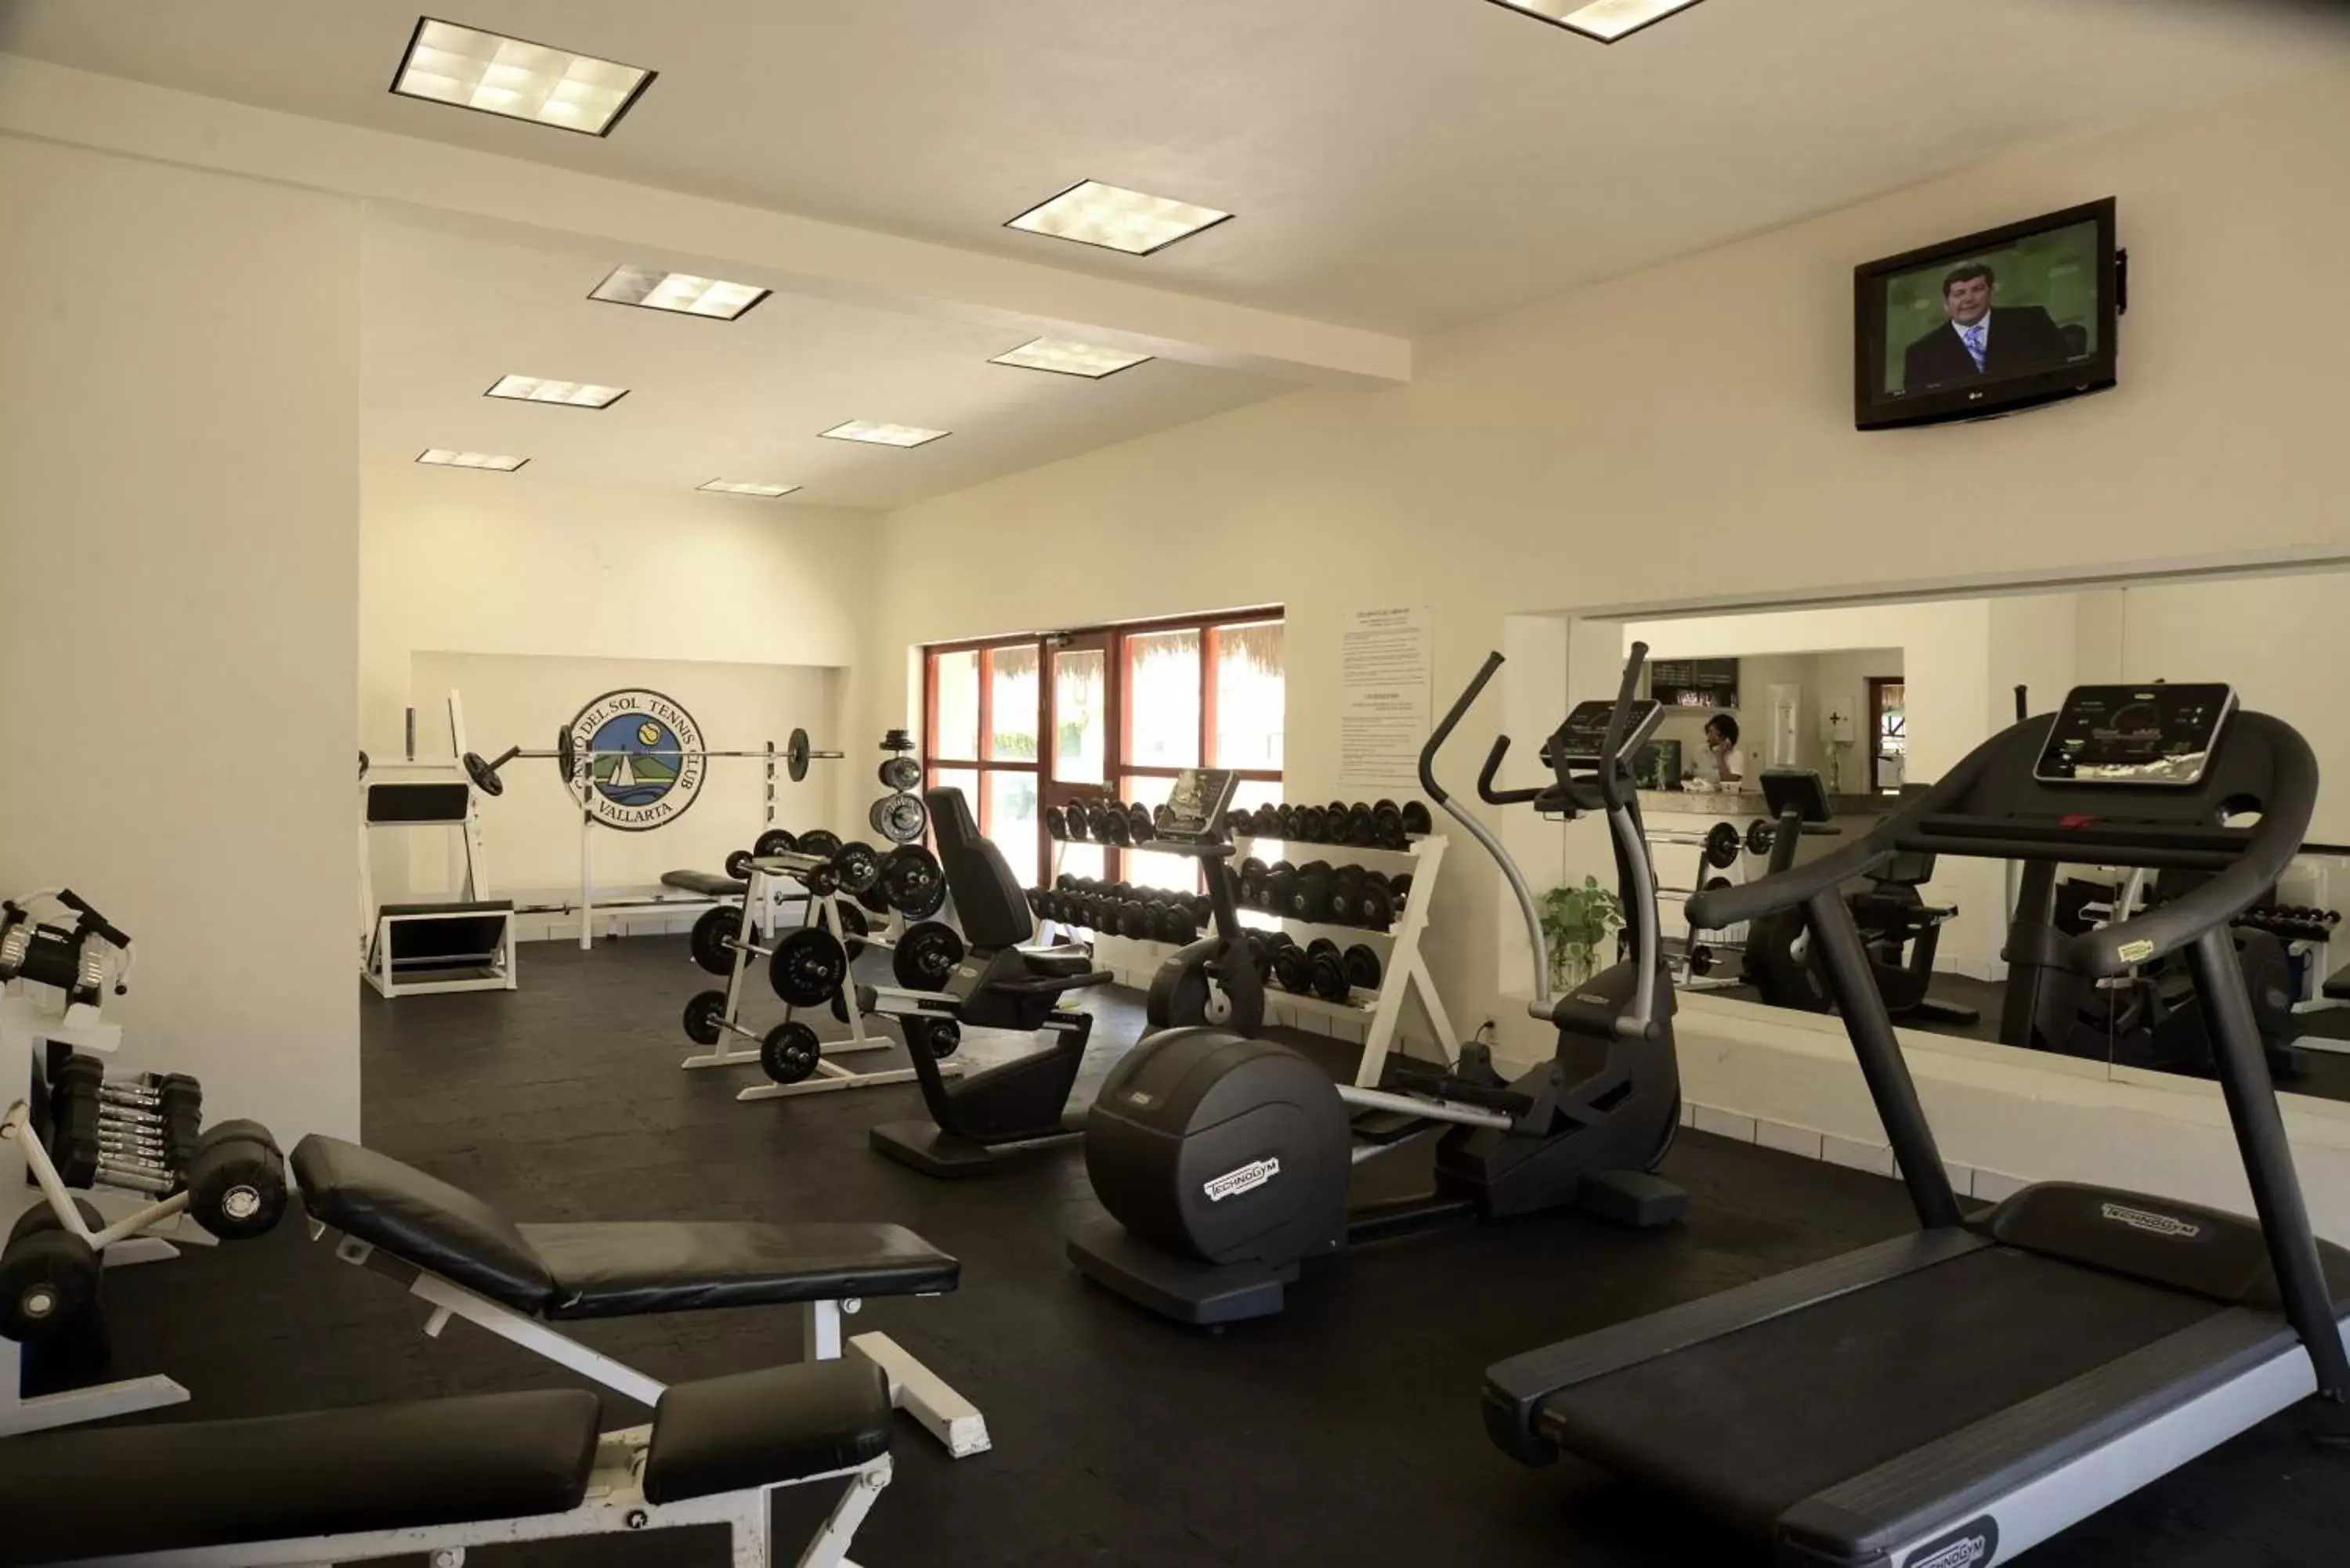 Fitness centre/facilities, Fitness Center/Facilities in Canto del Sol Puerto Vallarta All Inclusive